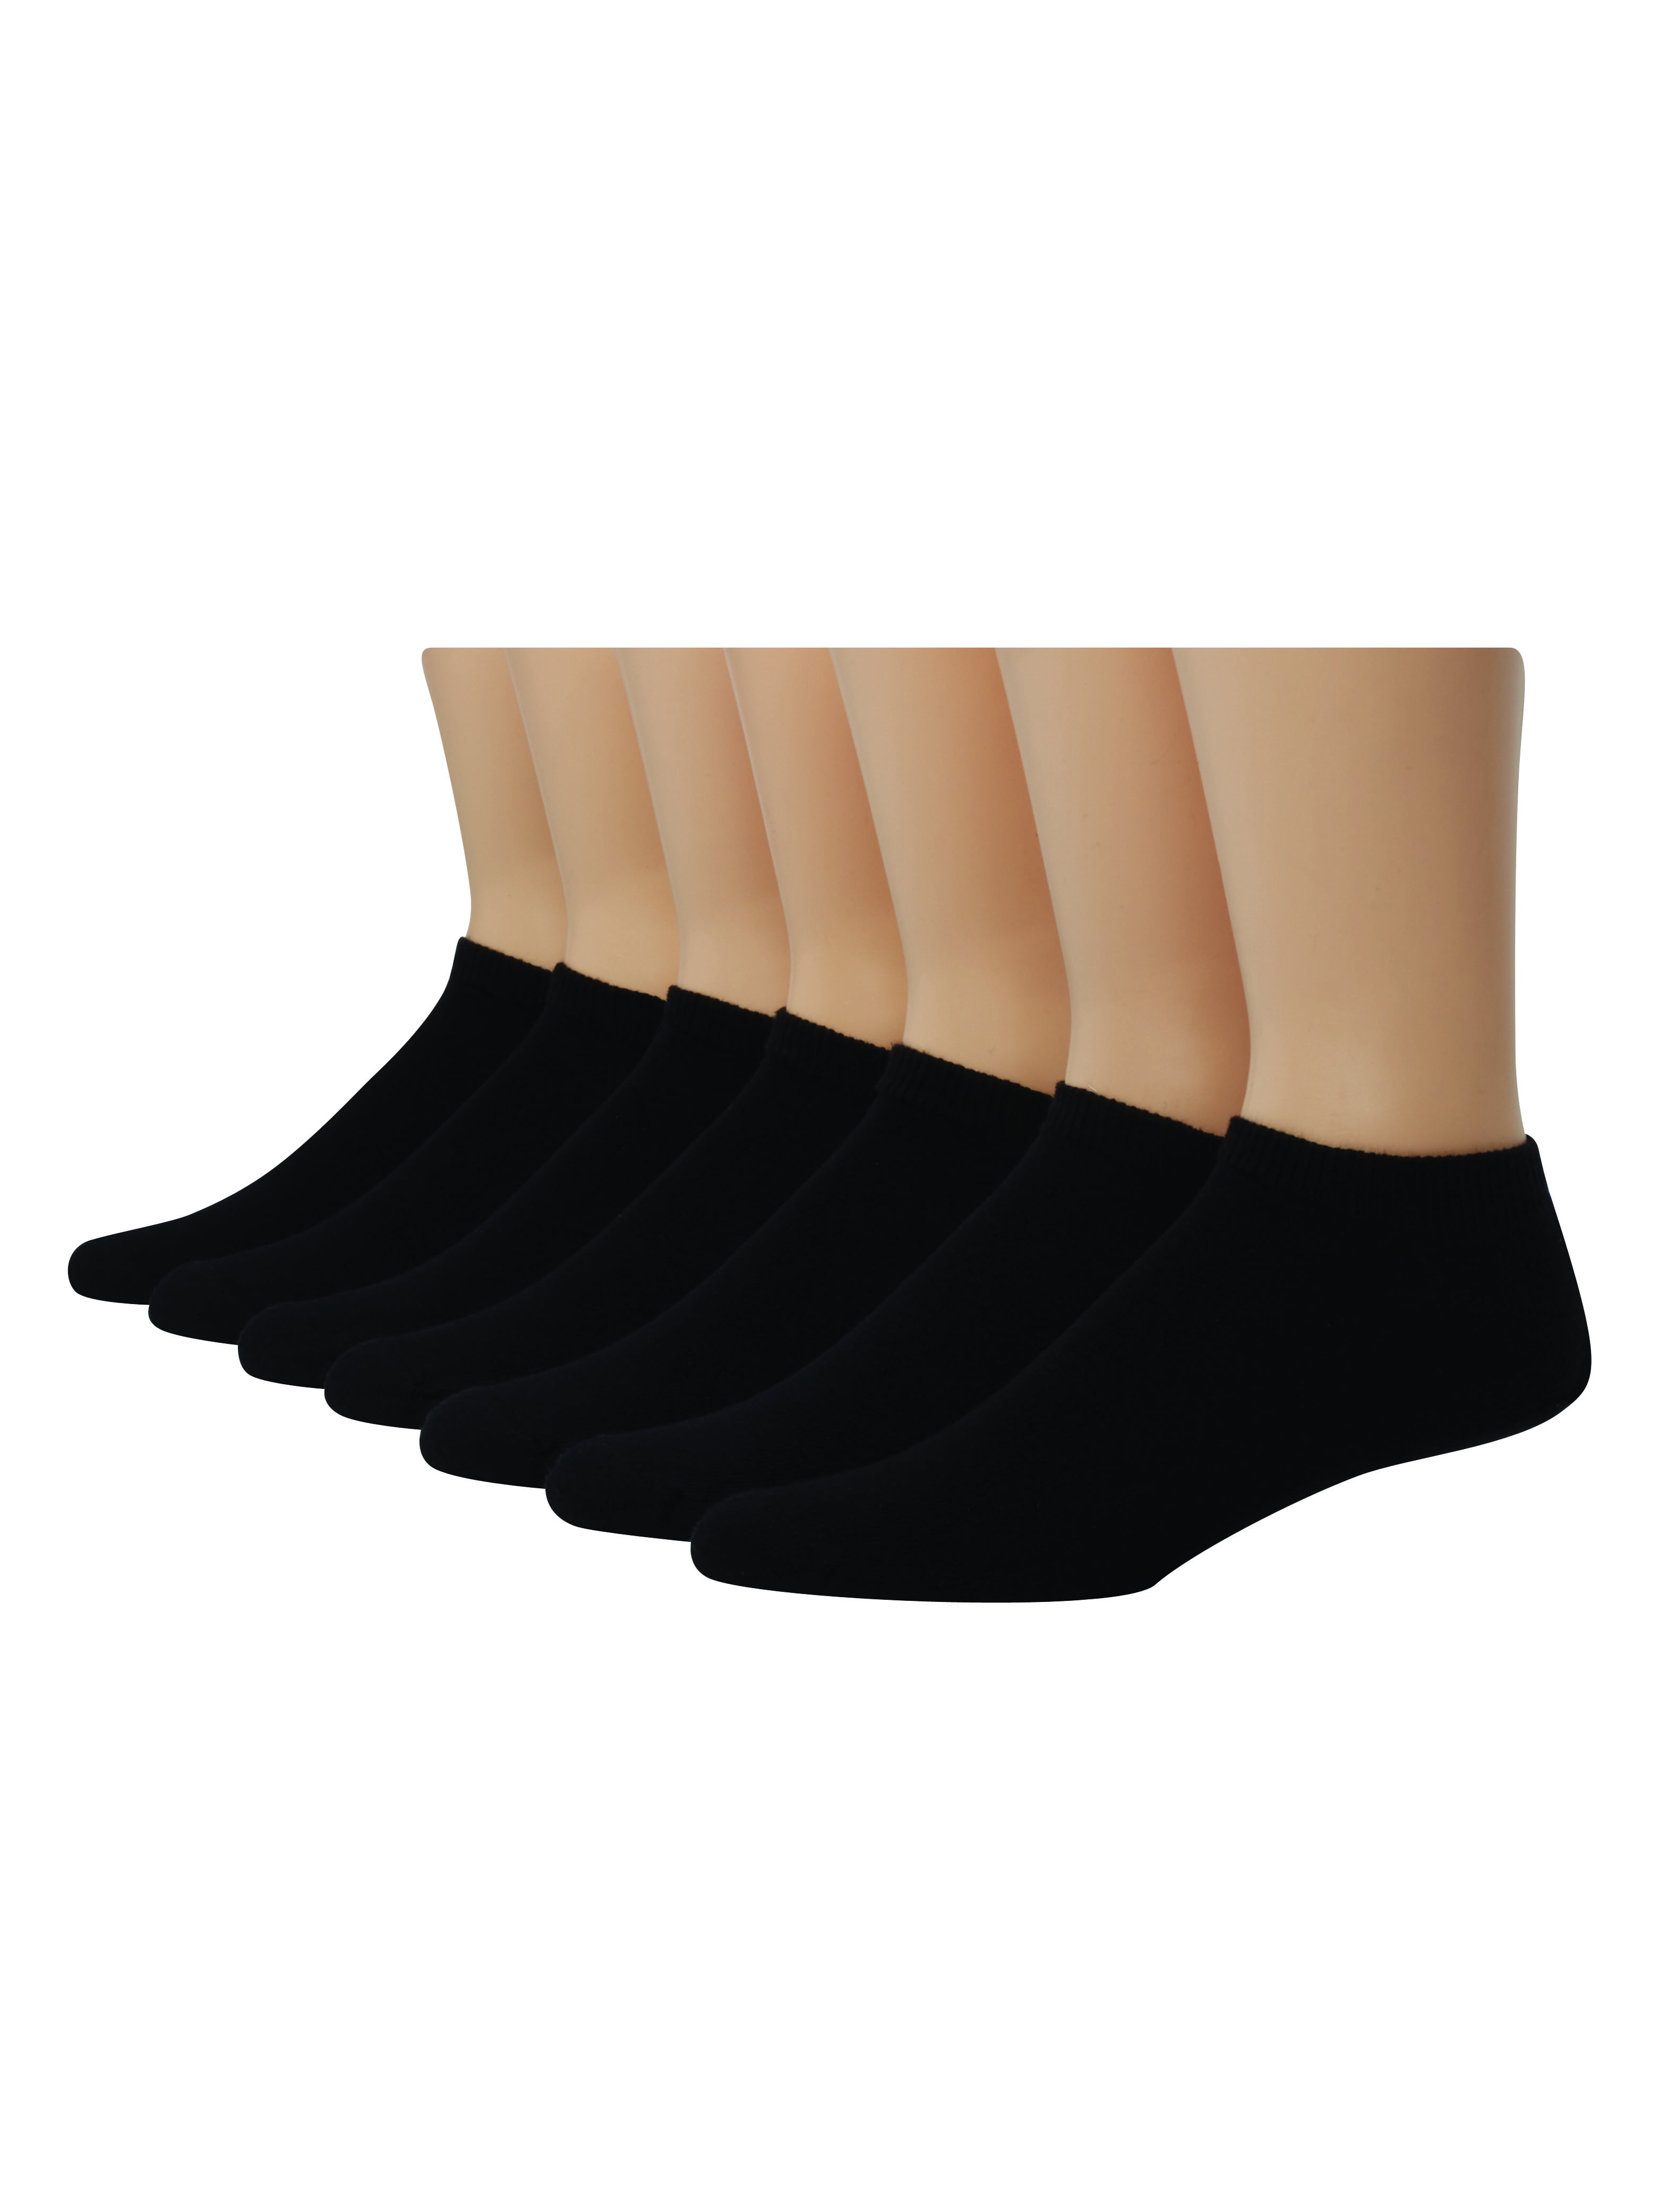 Hanes - Hanes X-Temp No Show Men's Socks, 12 Pack - Walmart.com ...